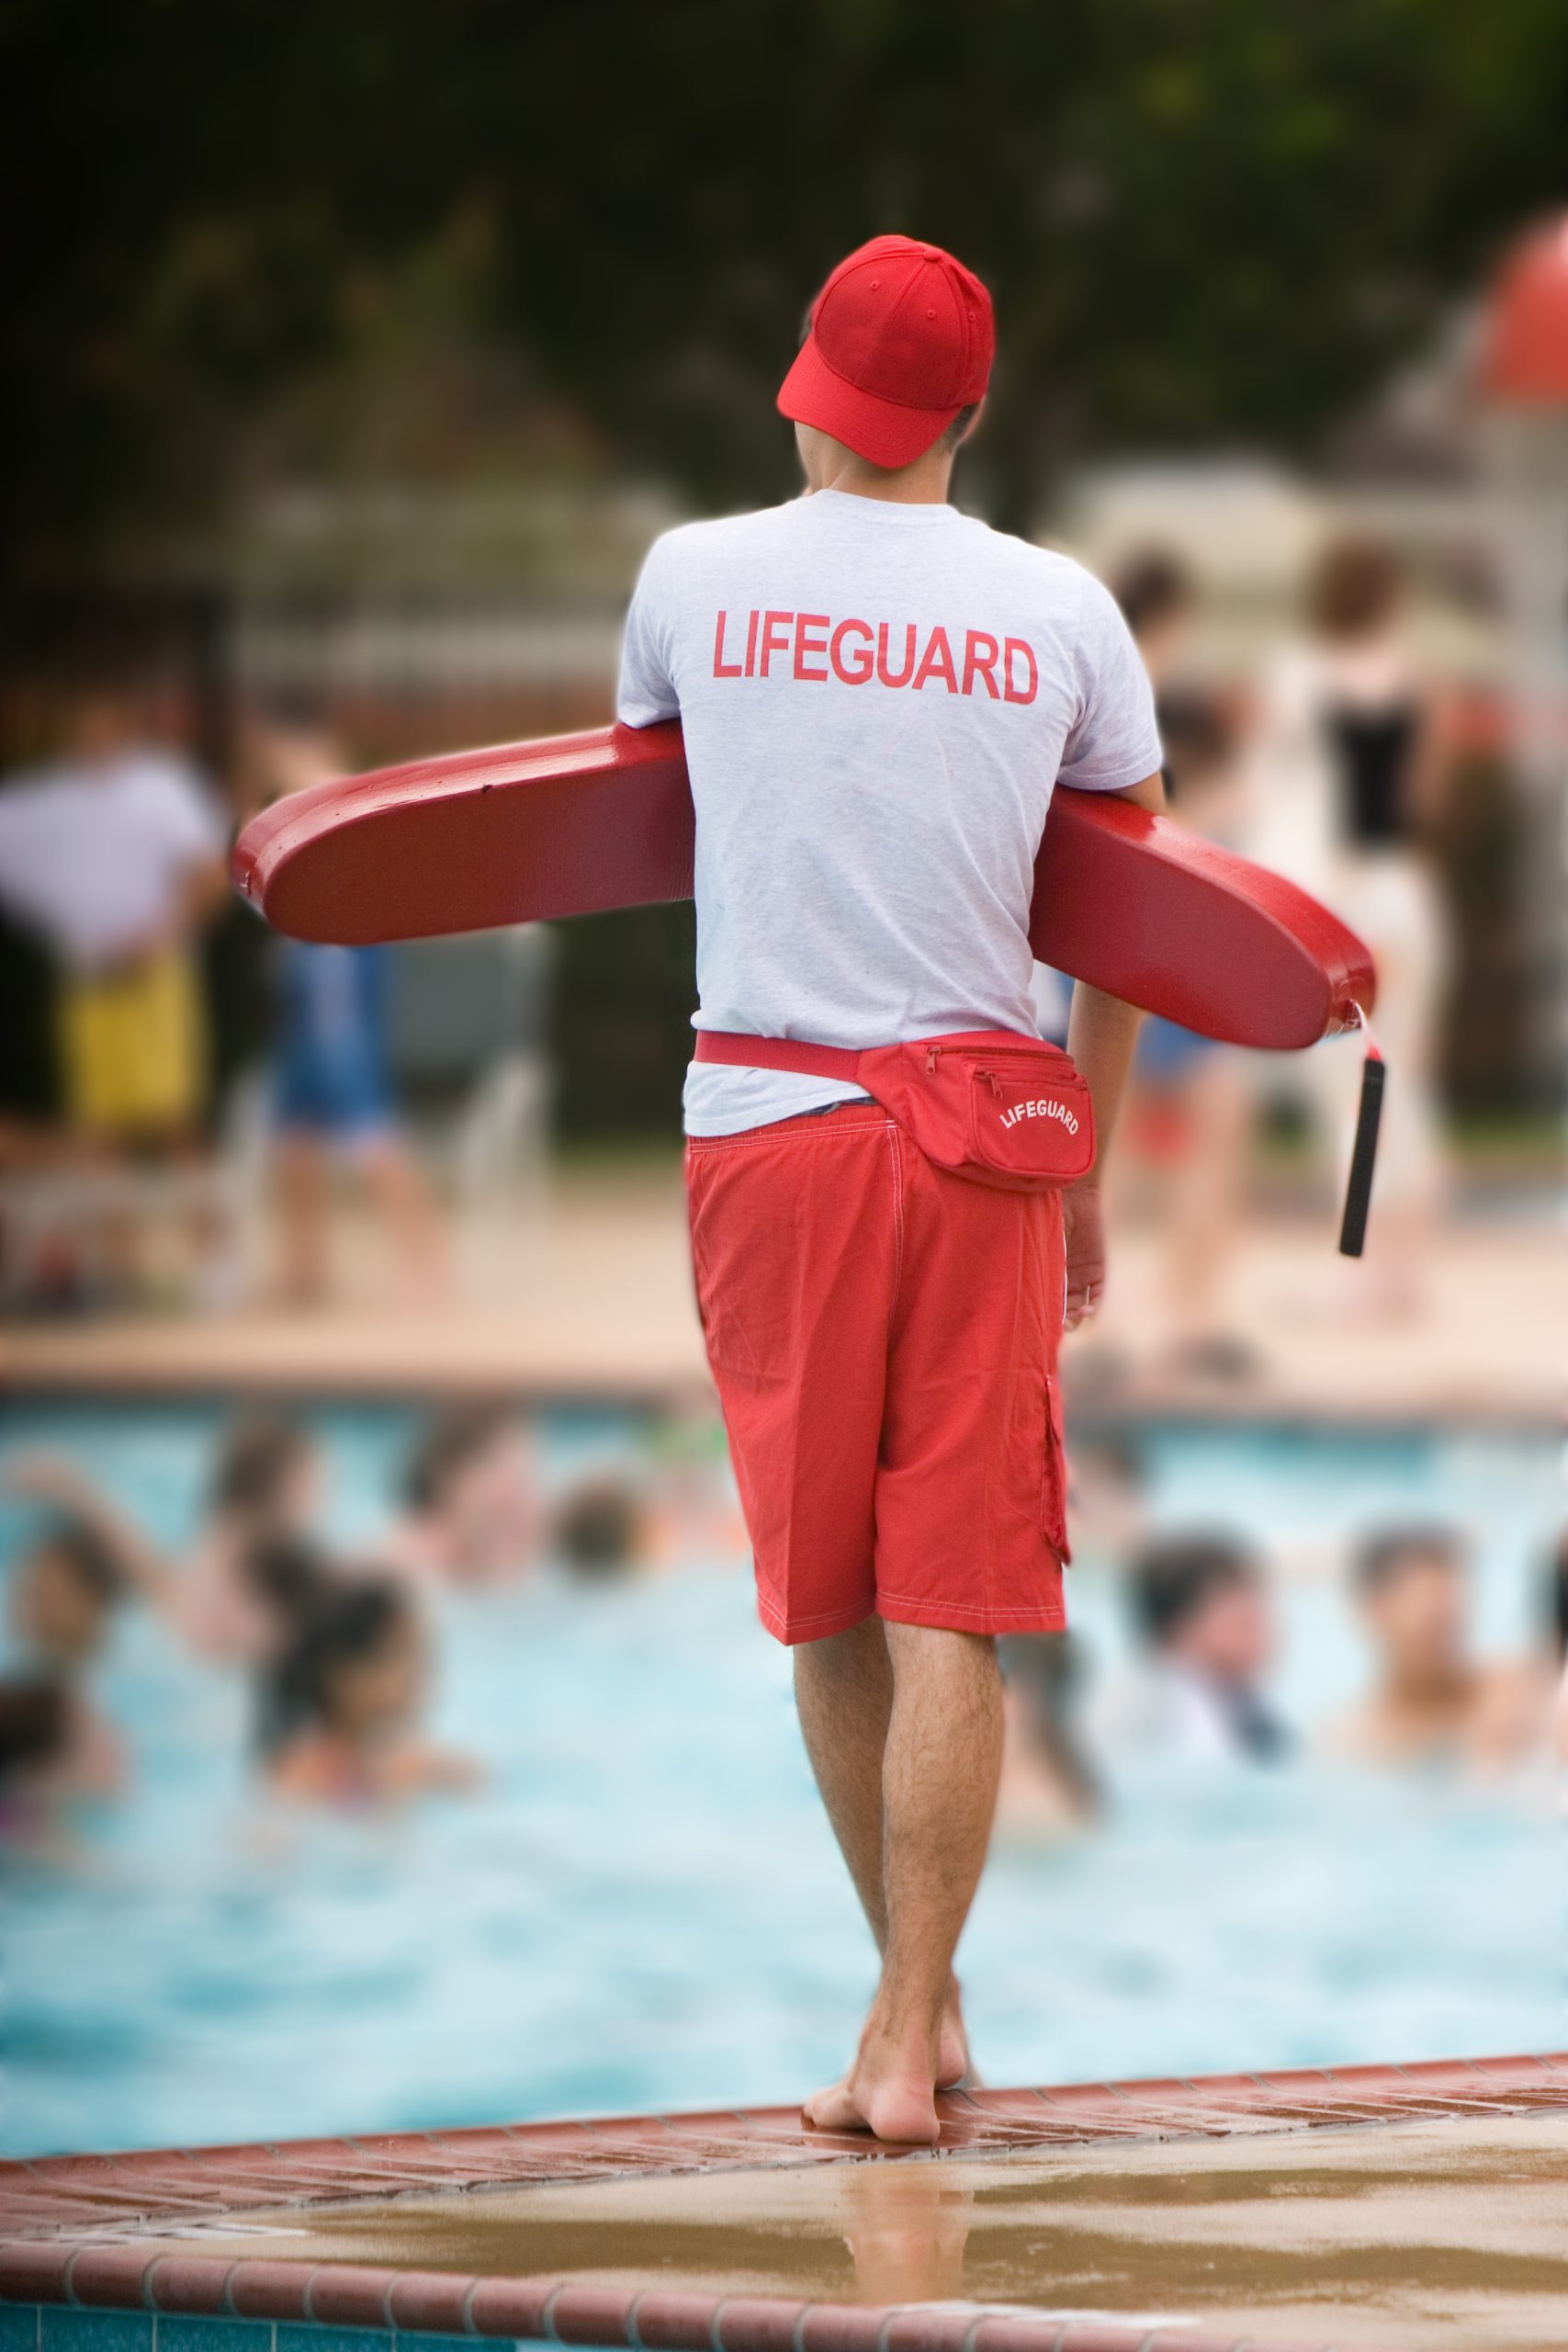 Lifeguard and pool staff